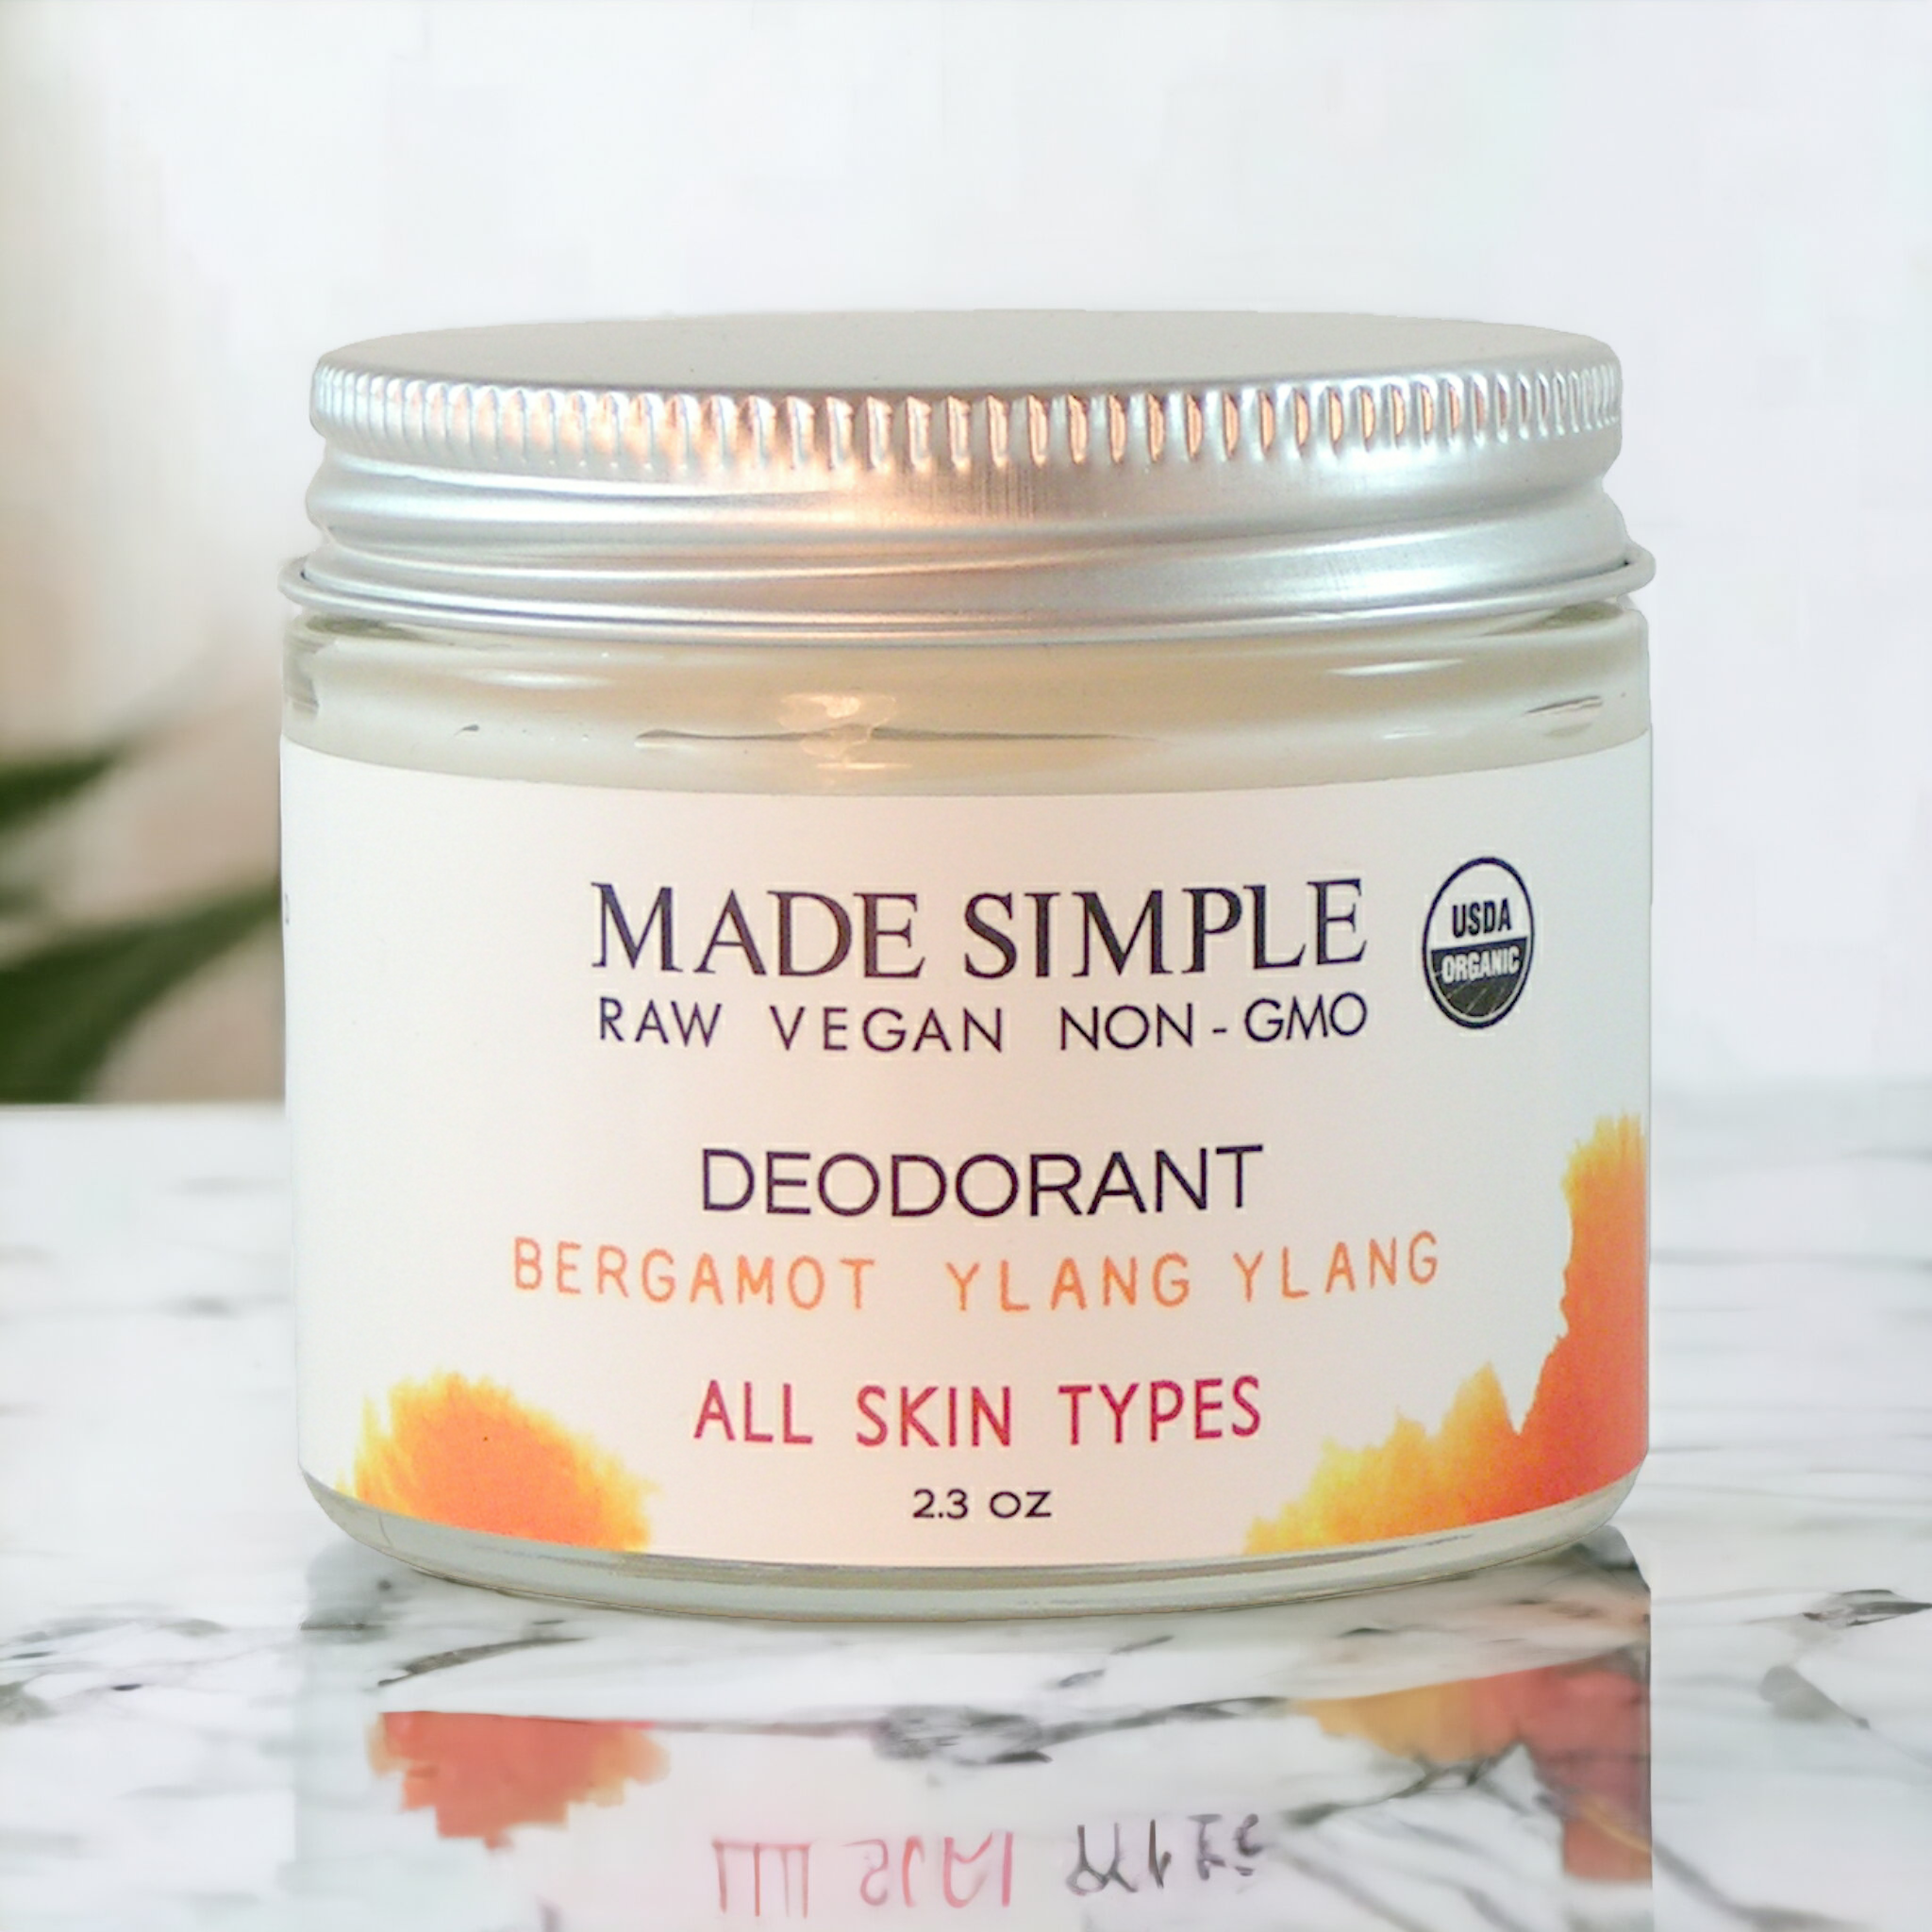 Made Simple Skin Care Bergamot Ylang Ylang Deodorant USDA certified organic raw vegan nonGMO